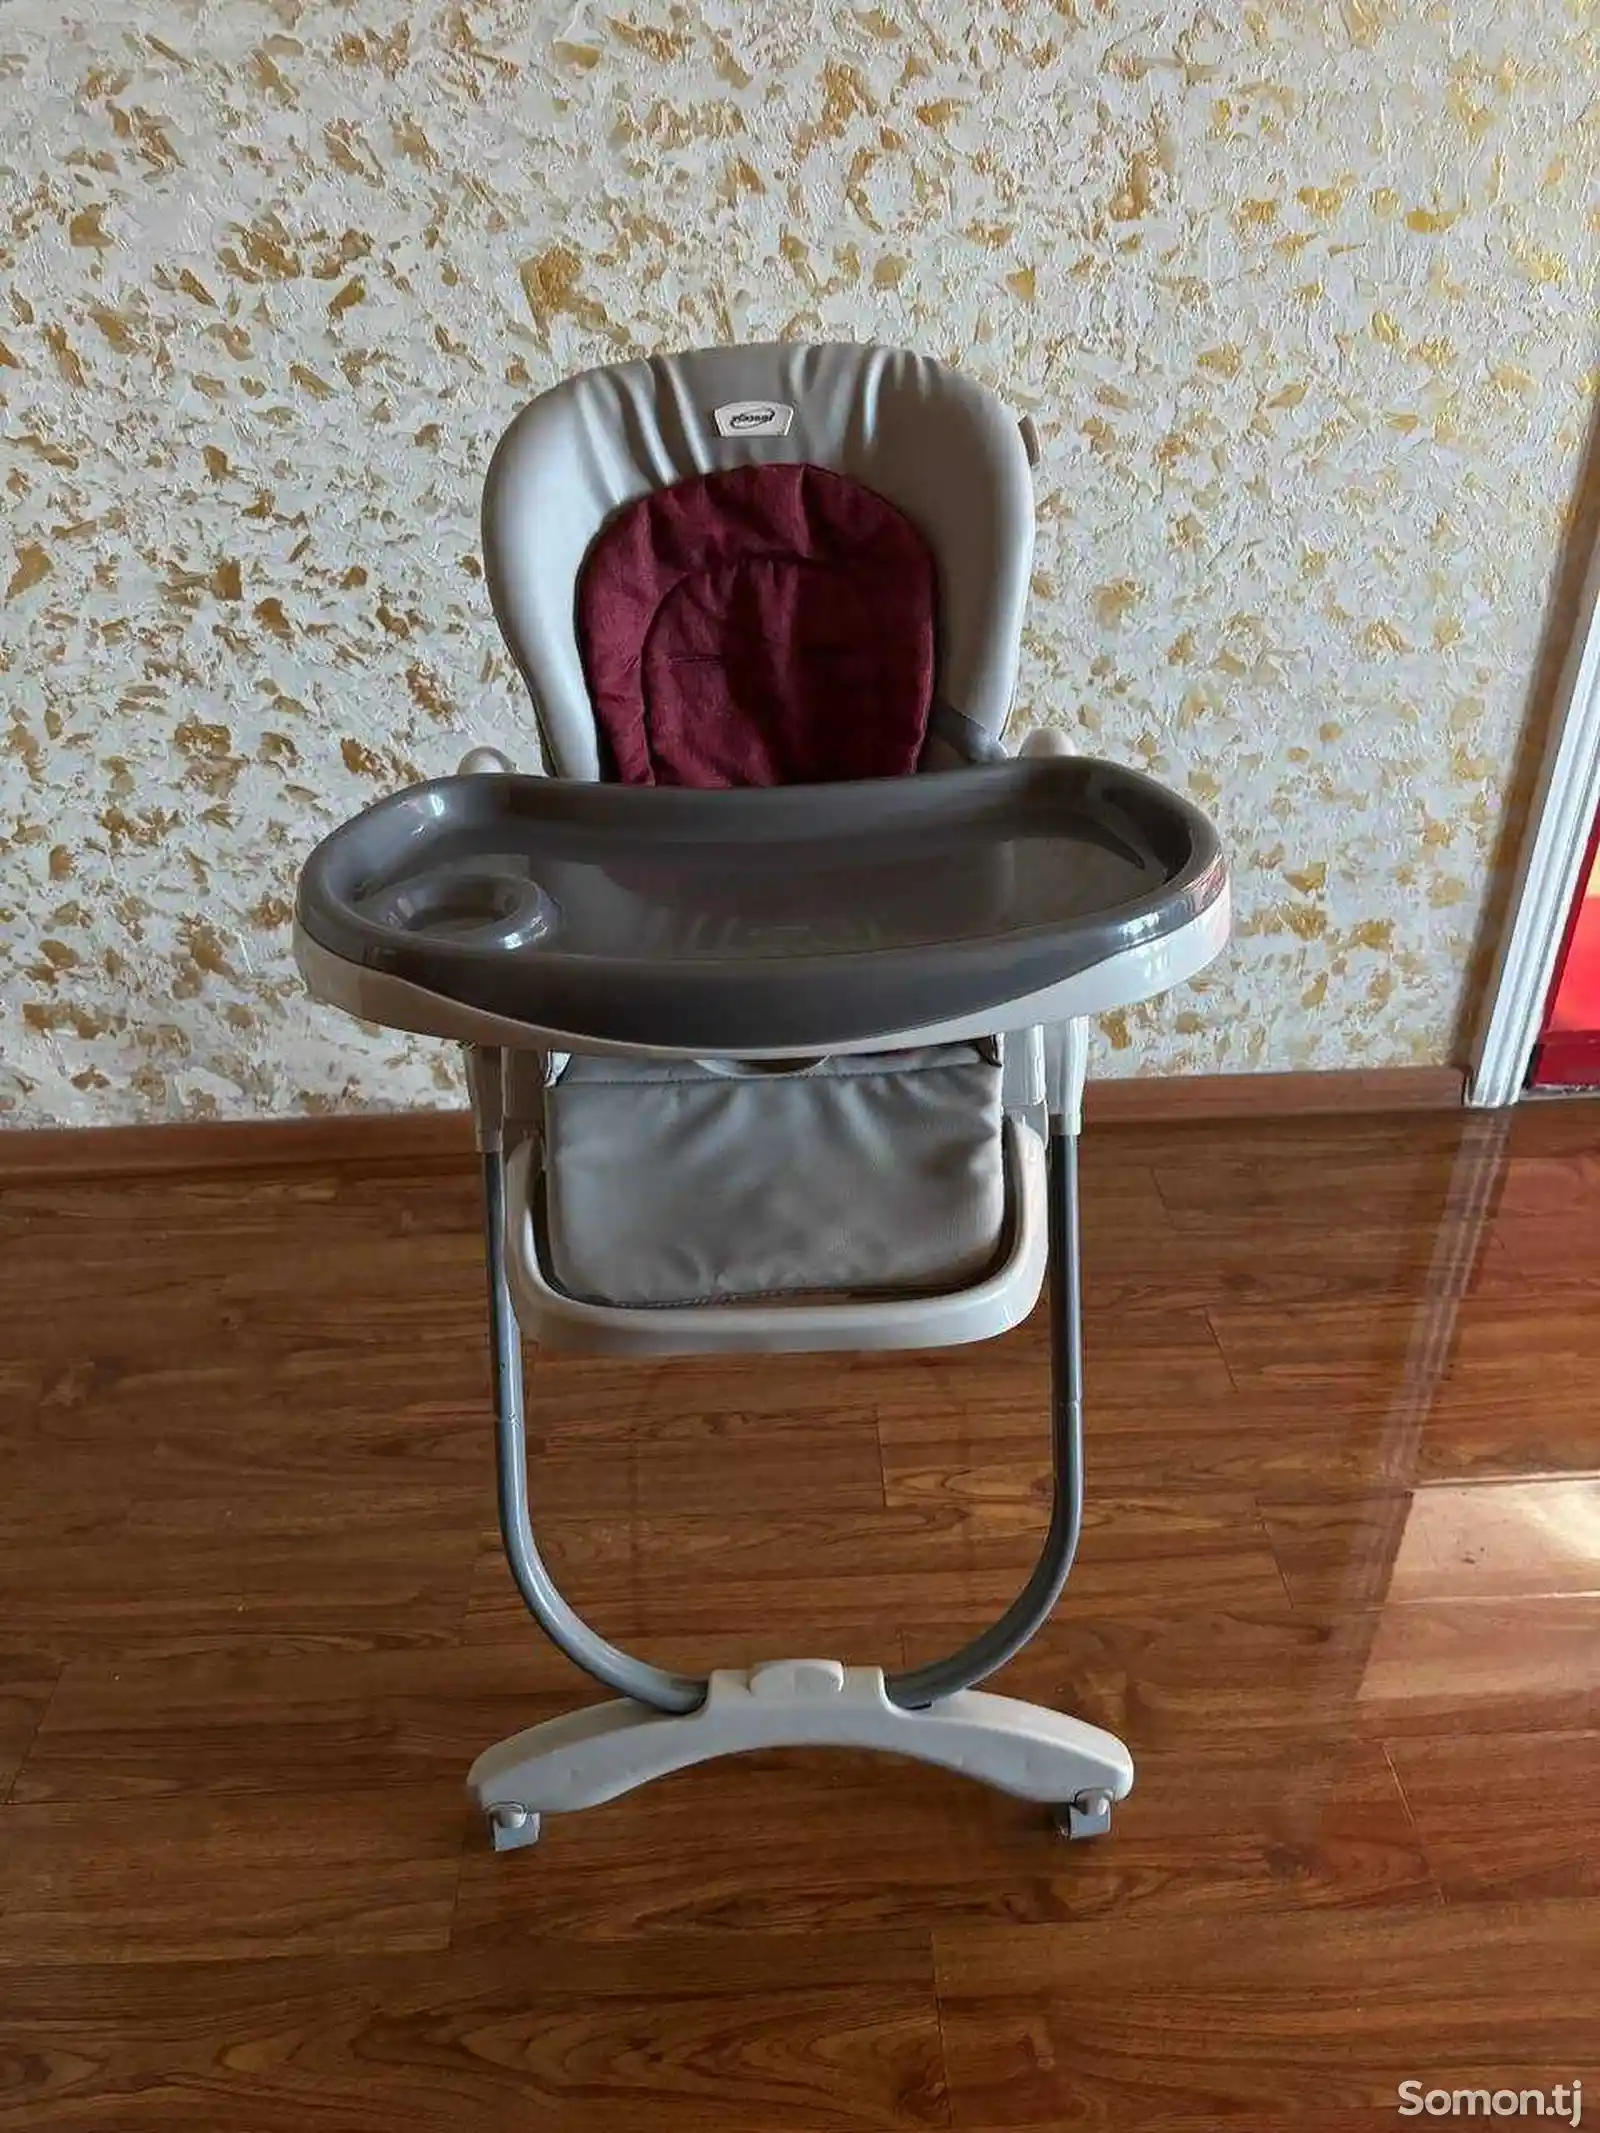 Стол и стул для кормления ребёнка-1